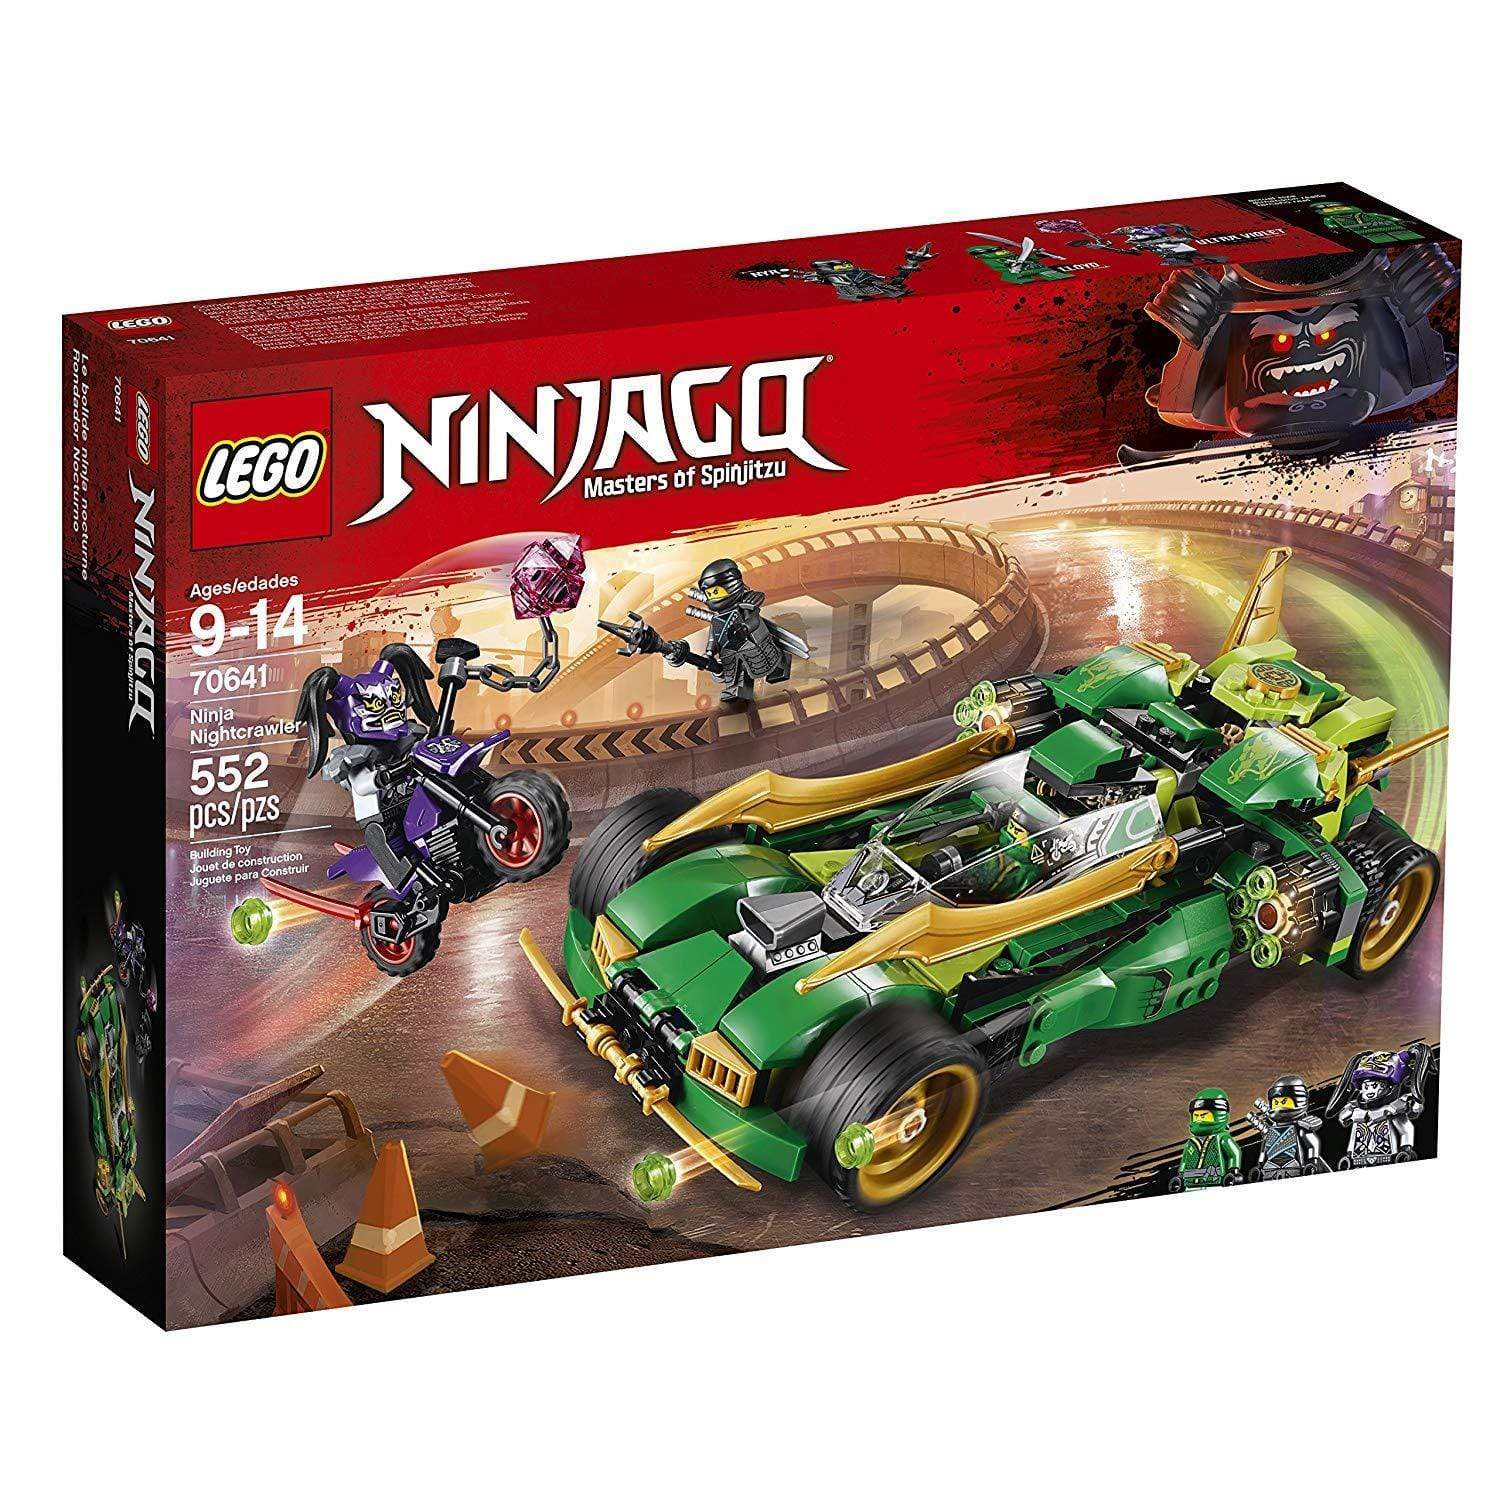 לגו נינג'אגו 70641 Ninja Nightcrawler LEGO-zrizi toys